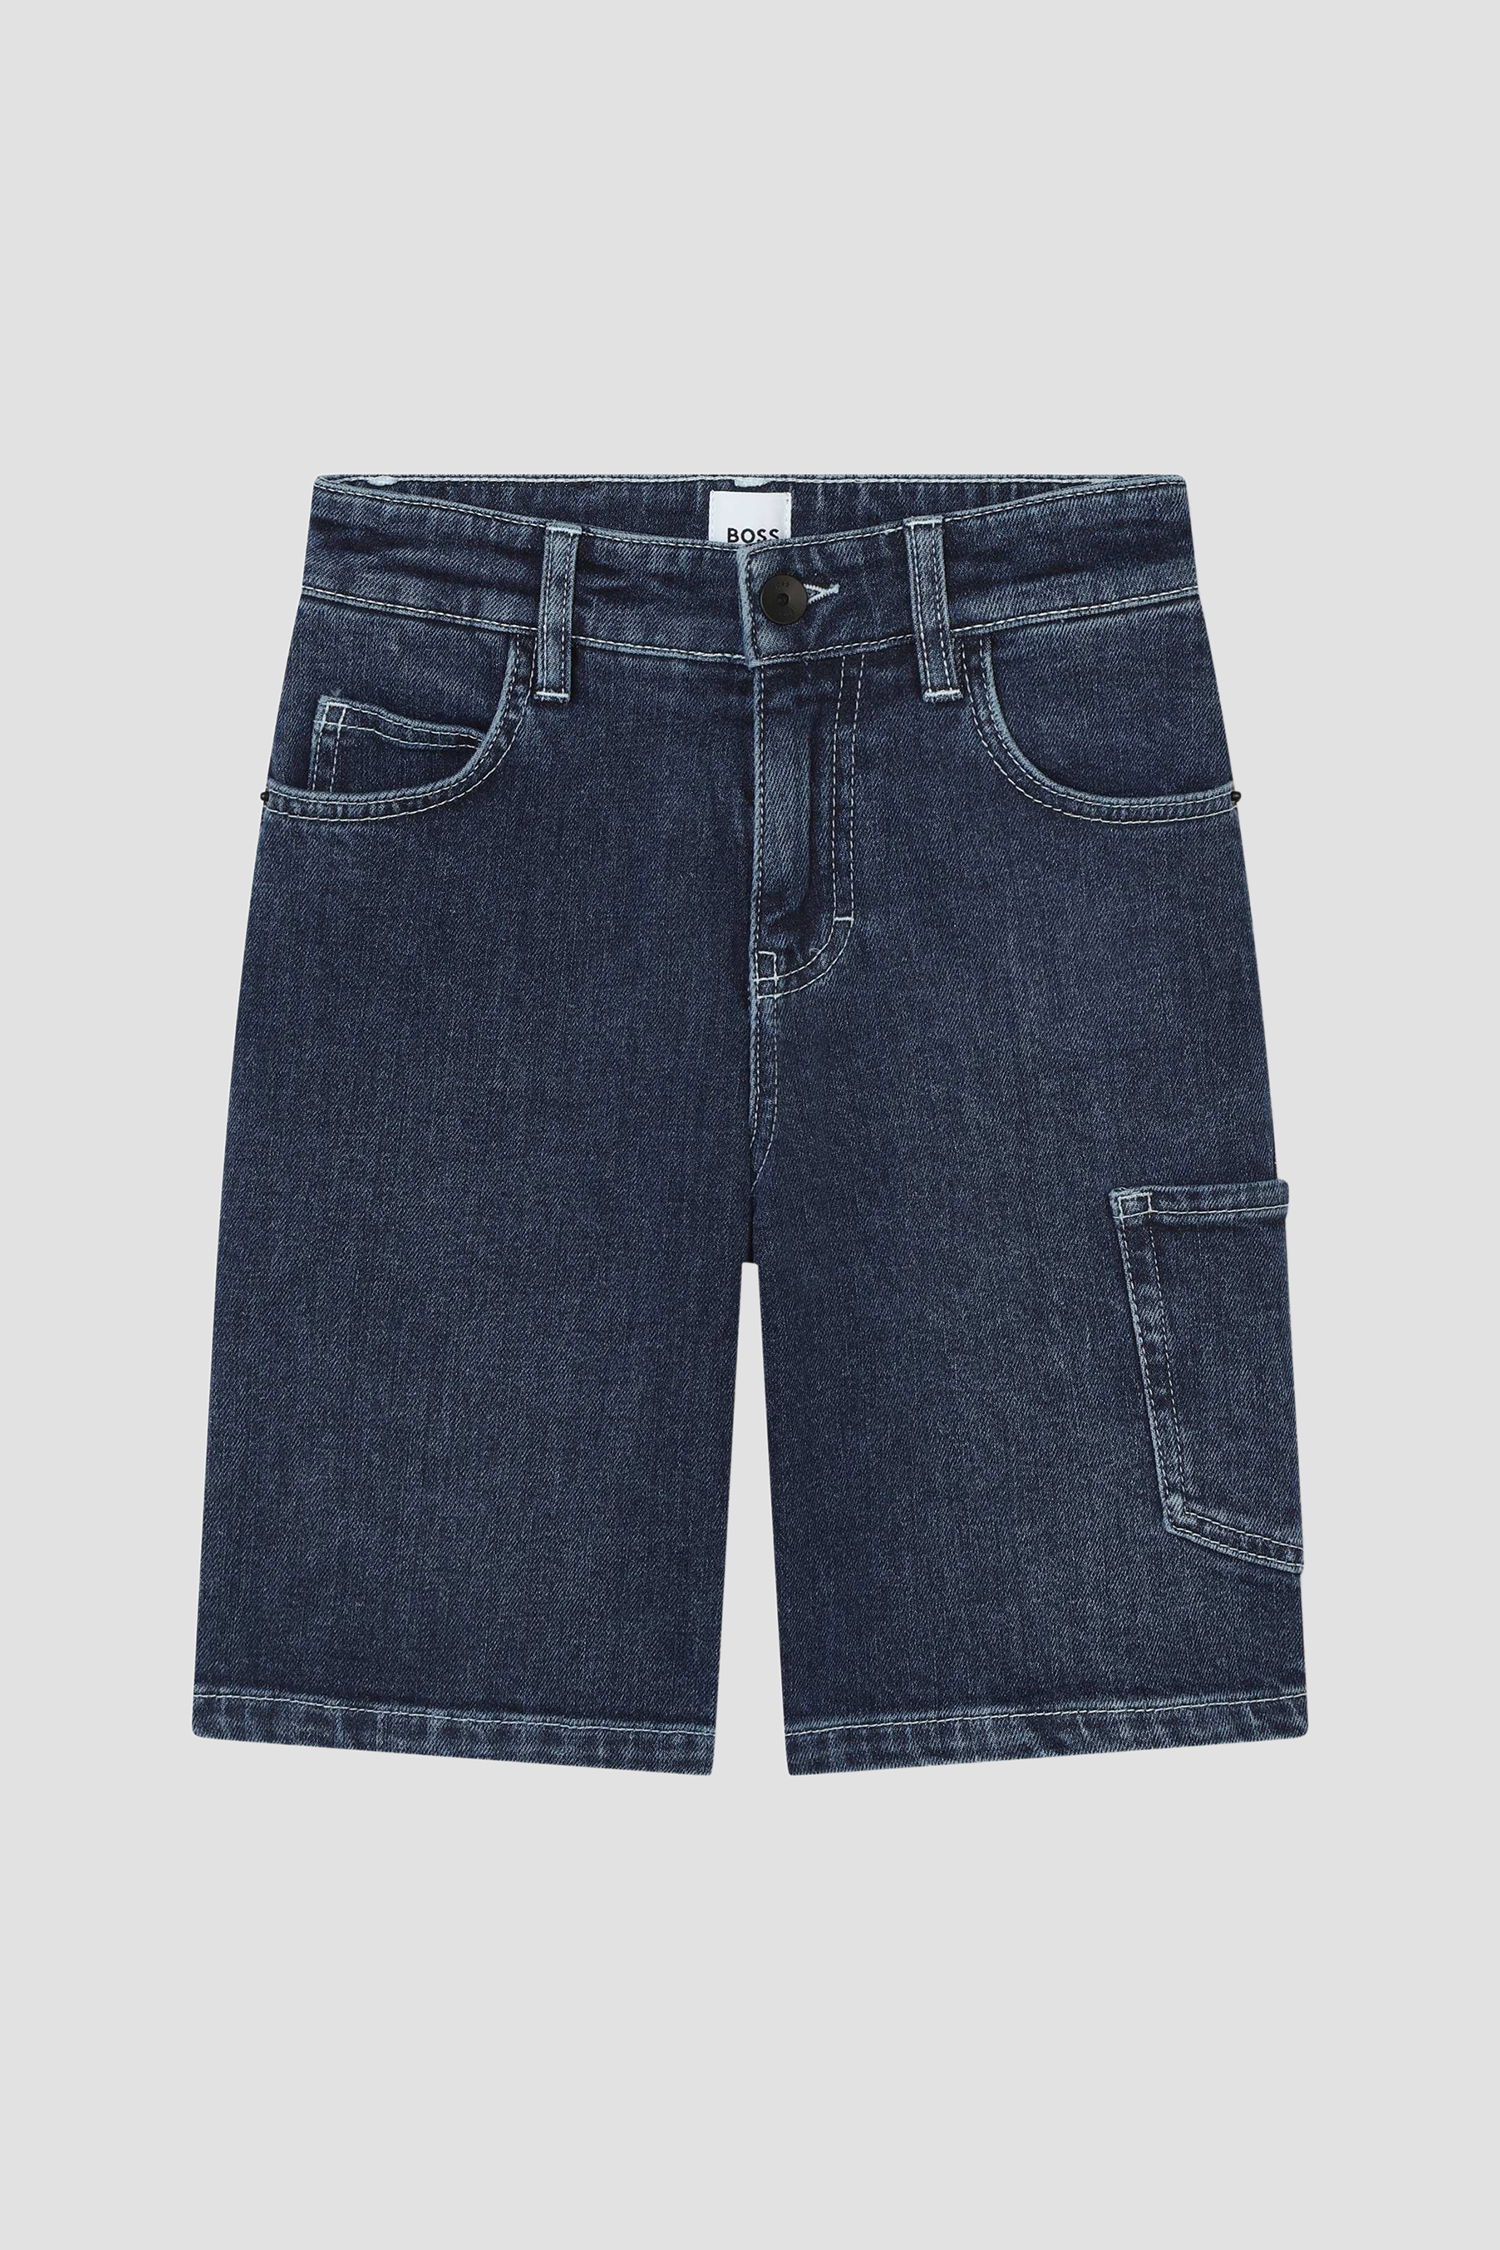 Детские темно-синие джинсовые шорты BOSS kids J50990;Z07